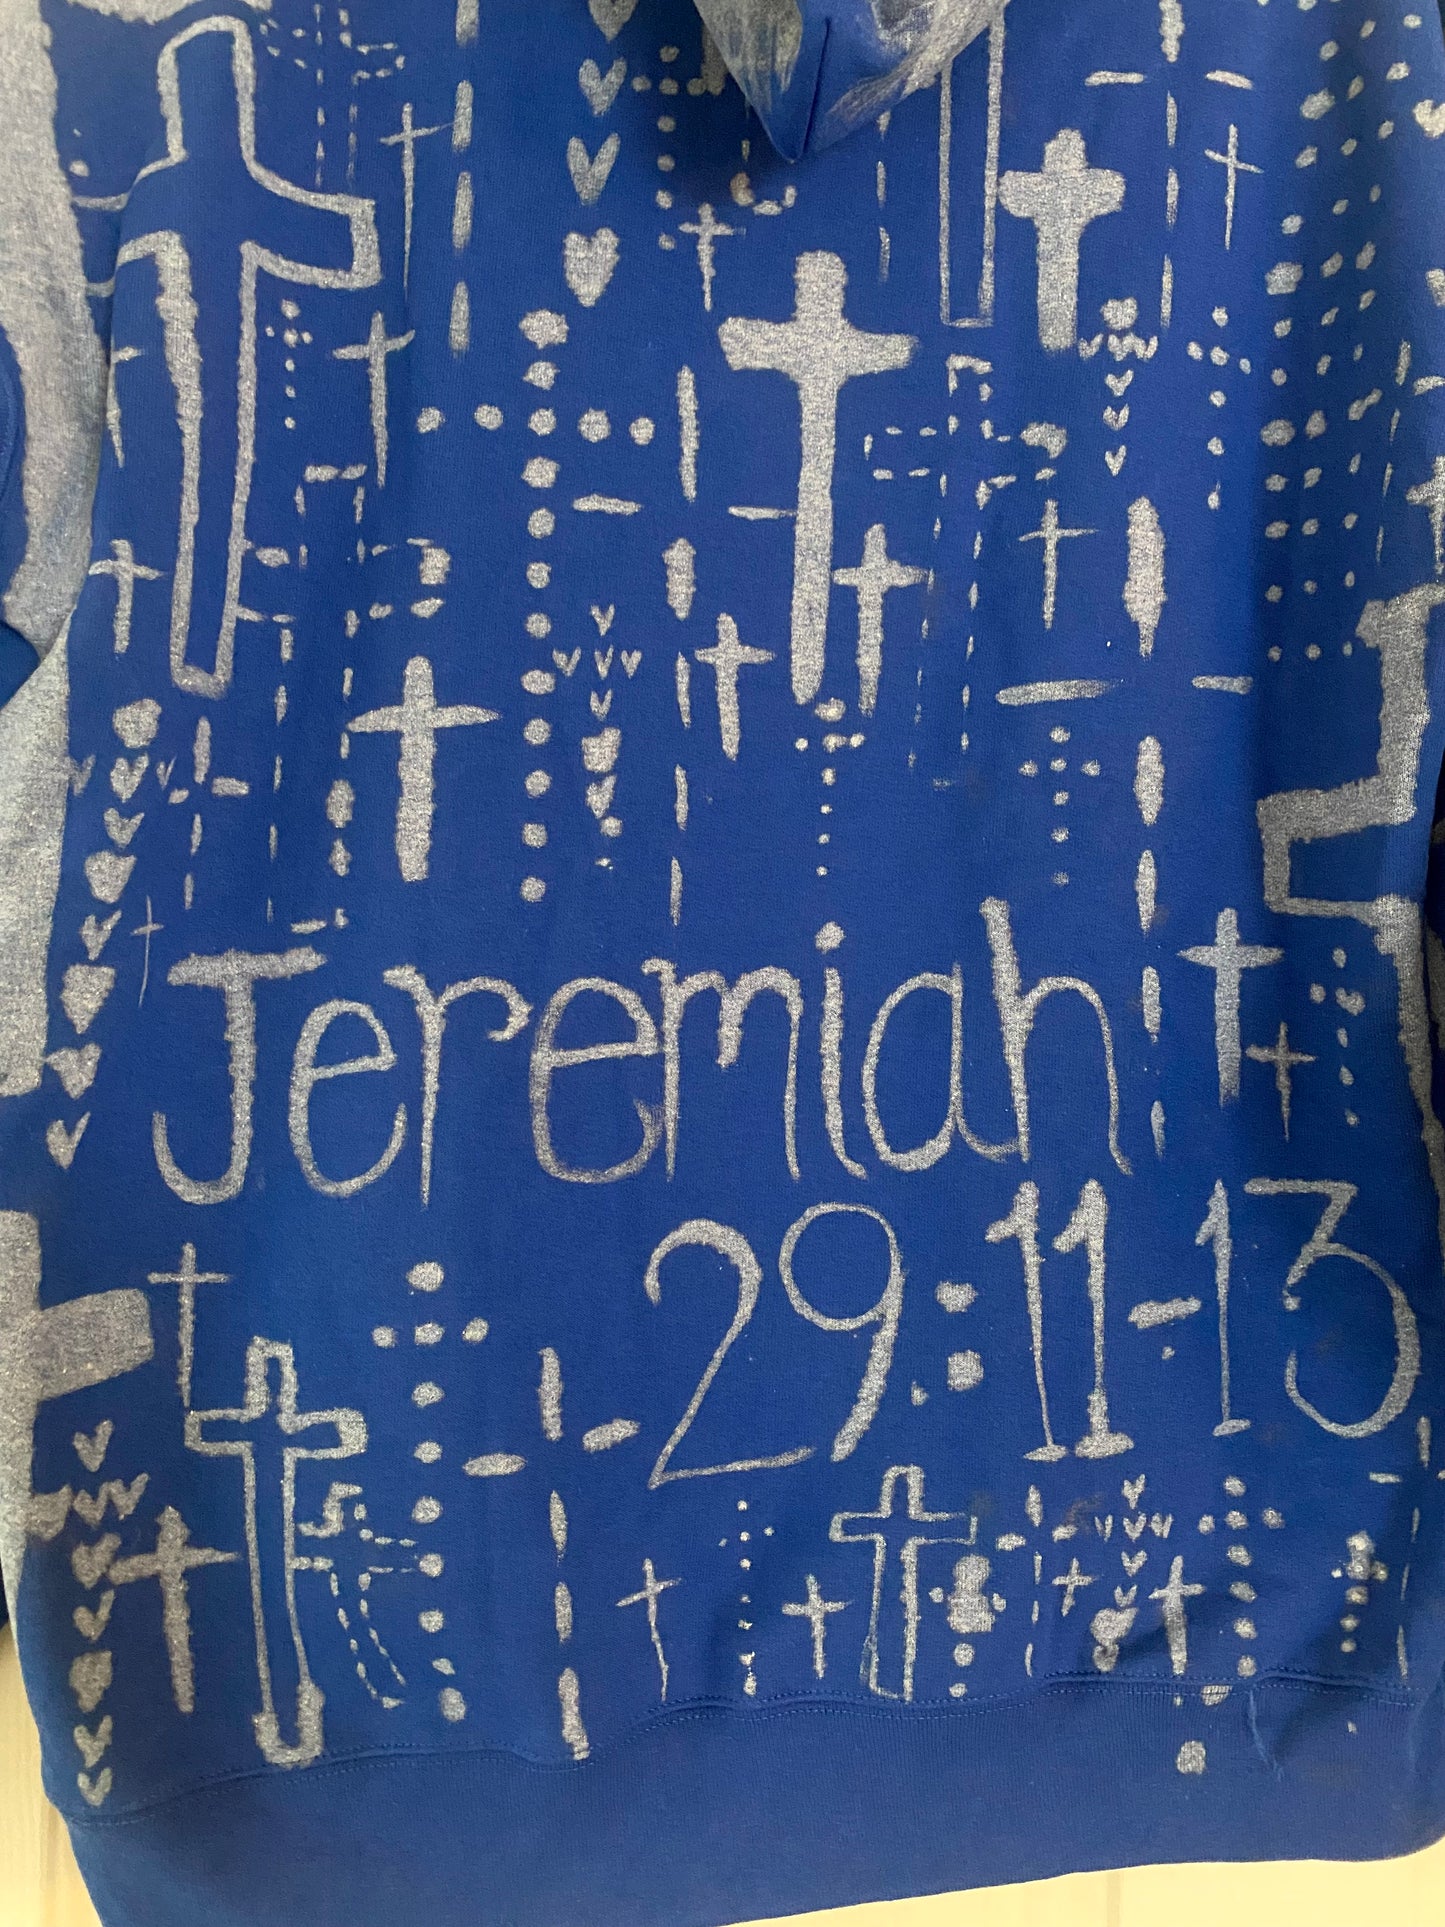 Jeremiah 29: 11-13